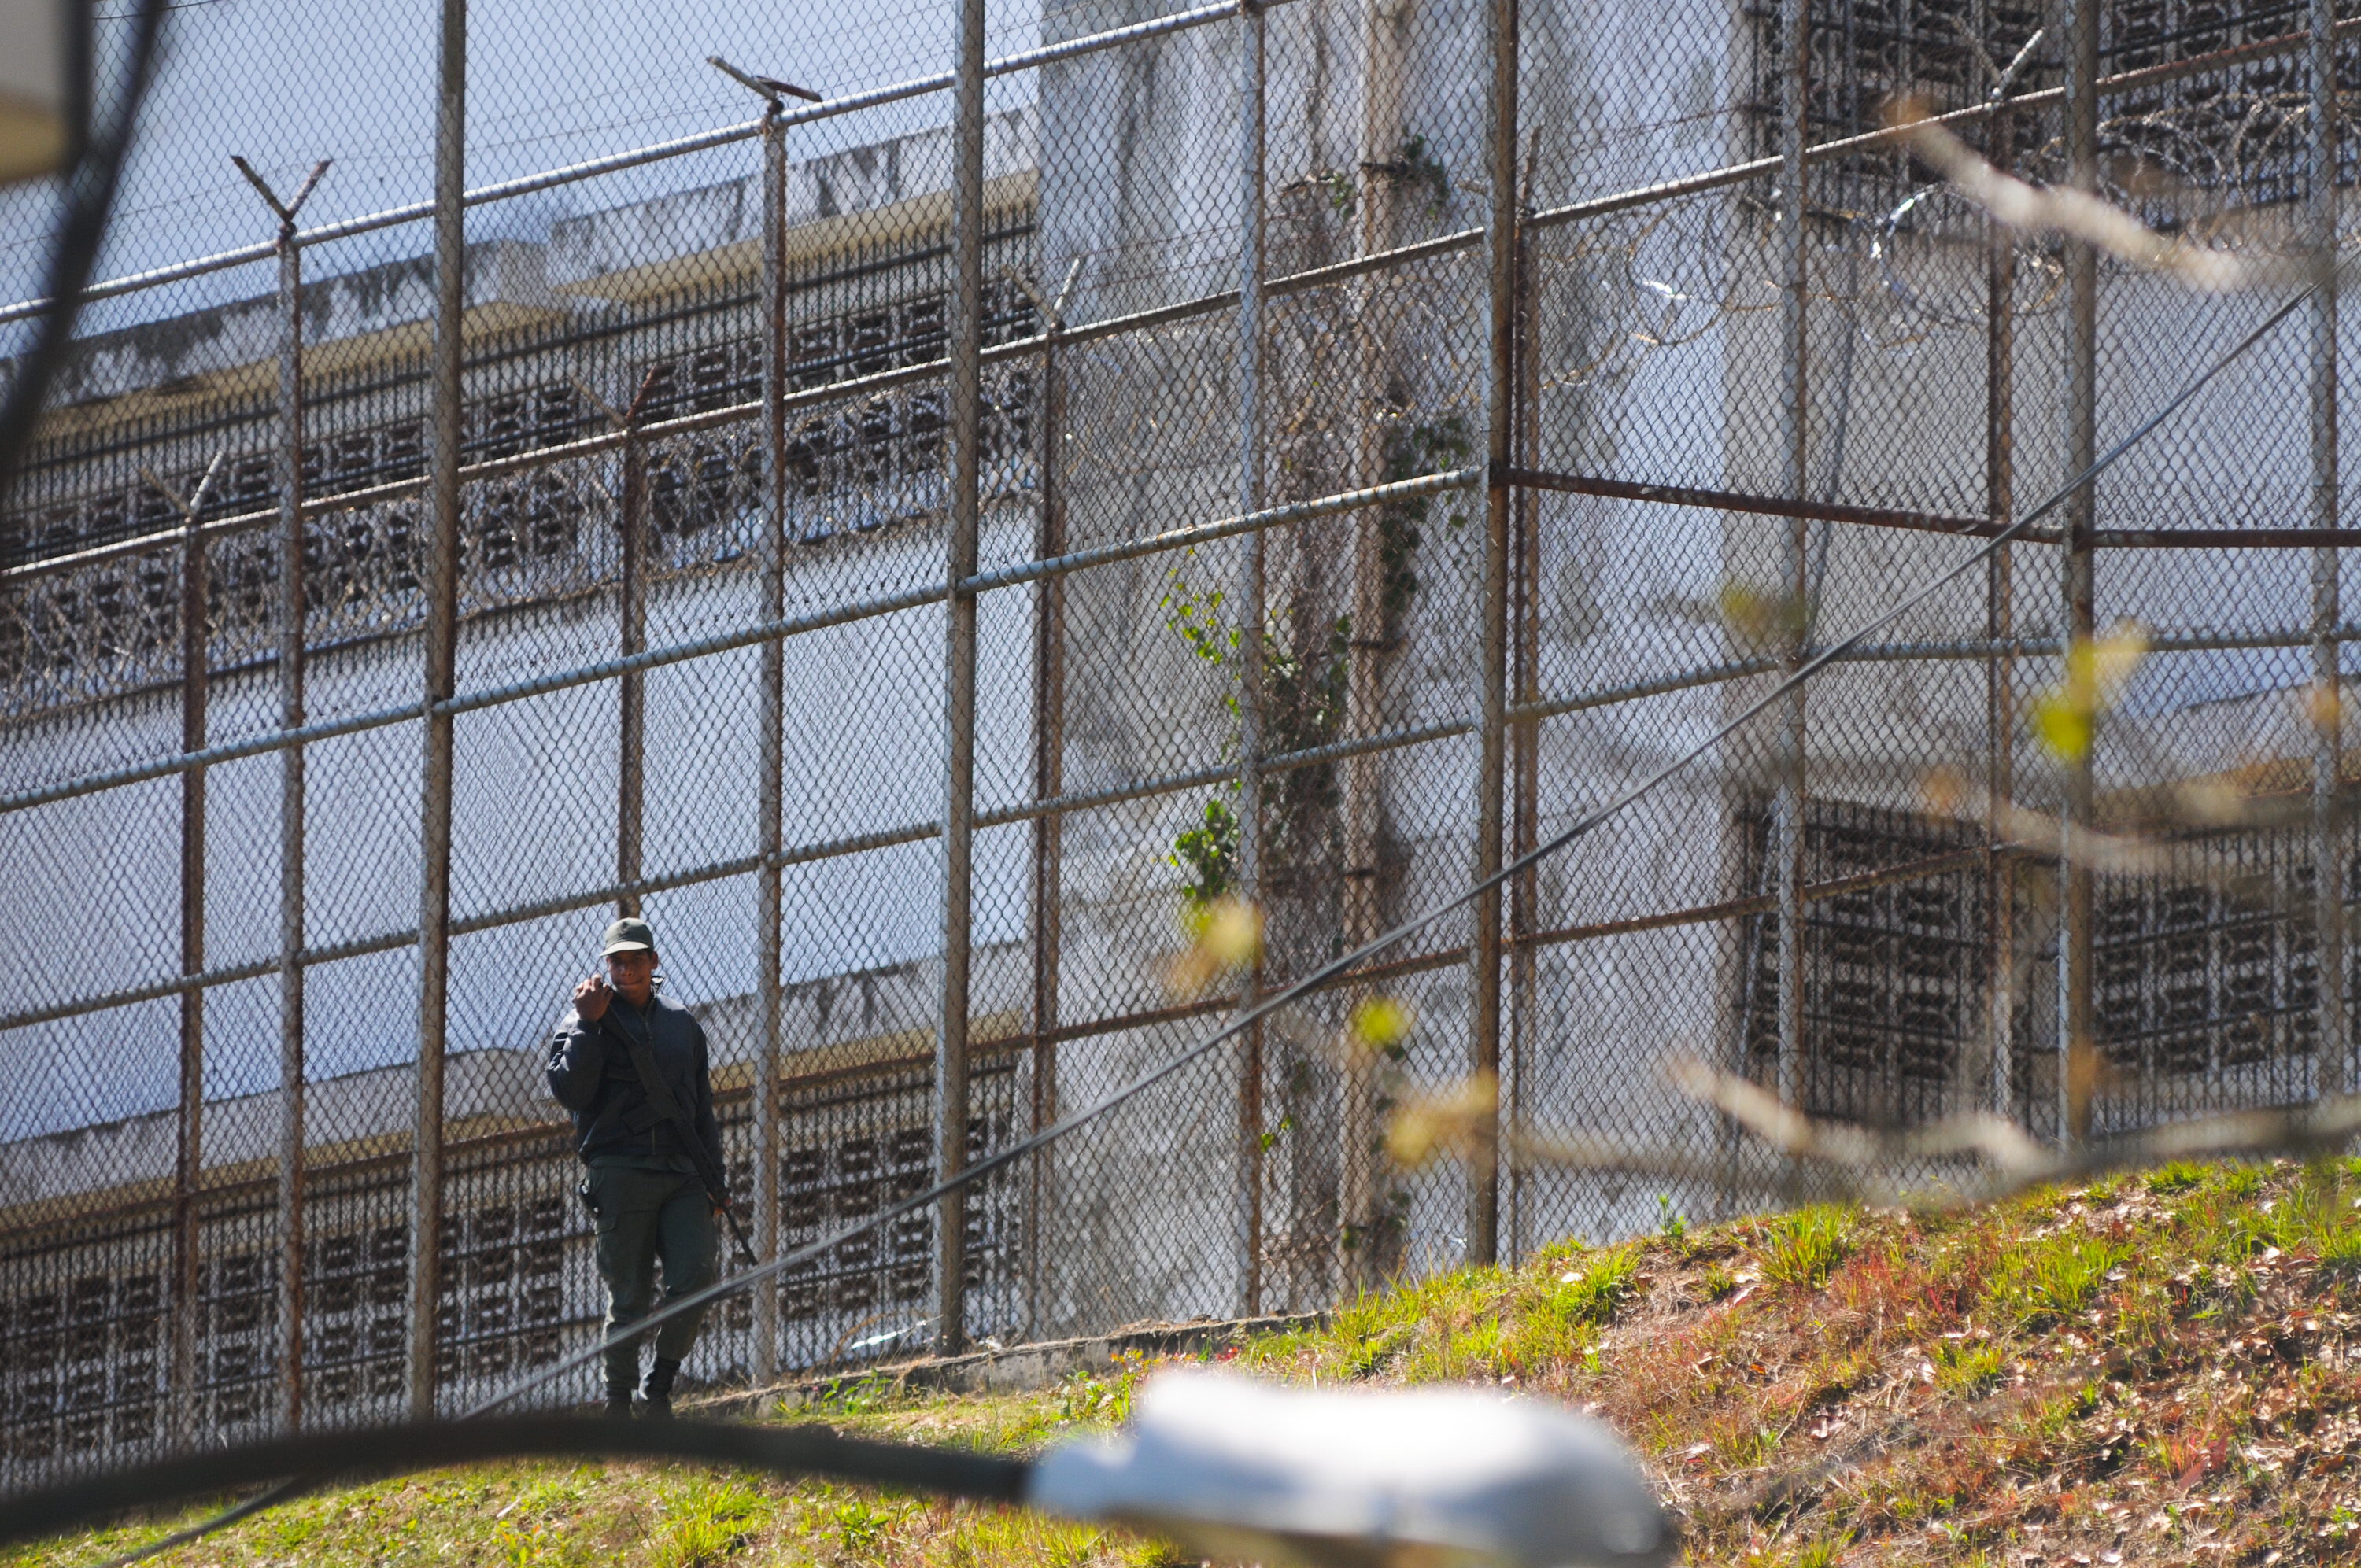 Tras fuerte requisa suspendieron las visitas en la cárcel militar de Ramo Verde #18May